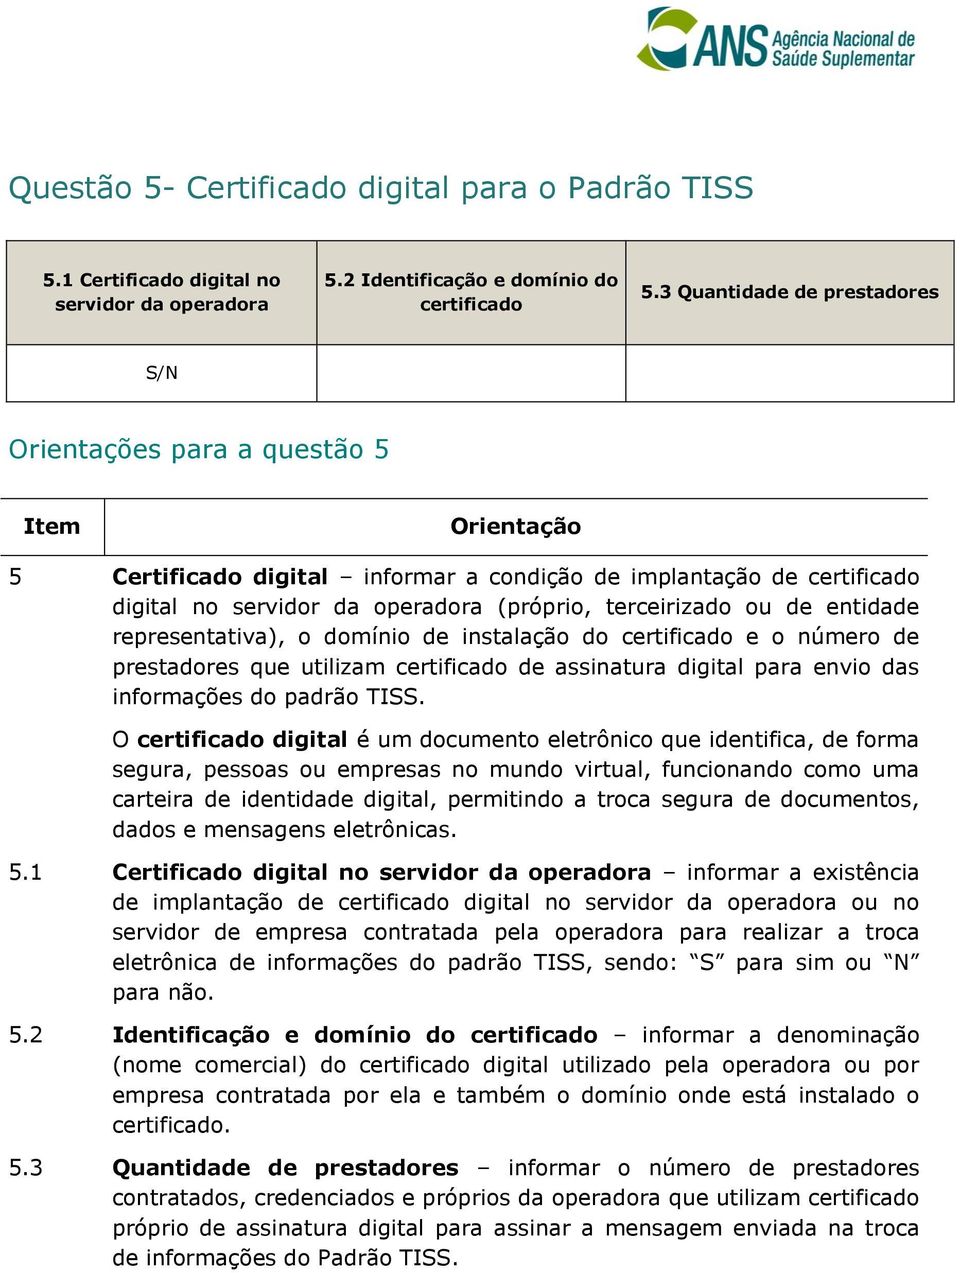 terceirizado ou de entidade representativa), o domínio de instalação do certificado e o número de prestadores que utilizam certificado de assinatura digital para envio das informações do padrão TISS.